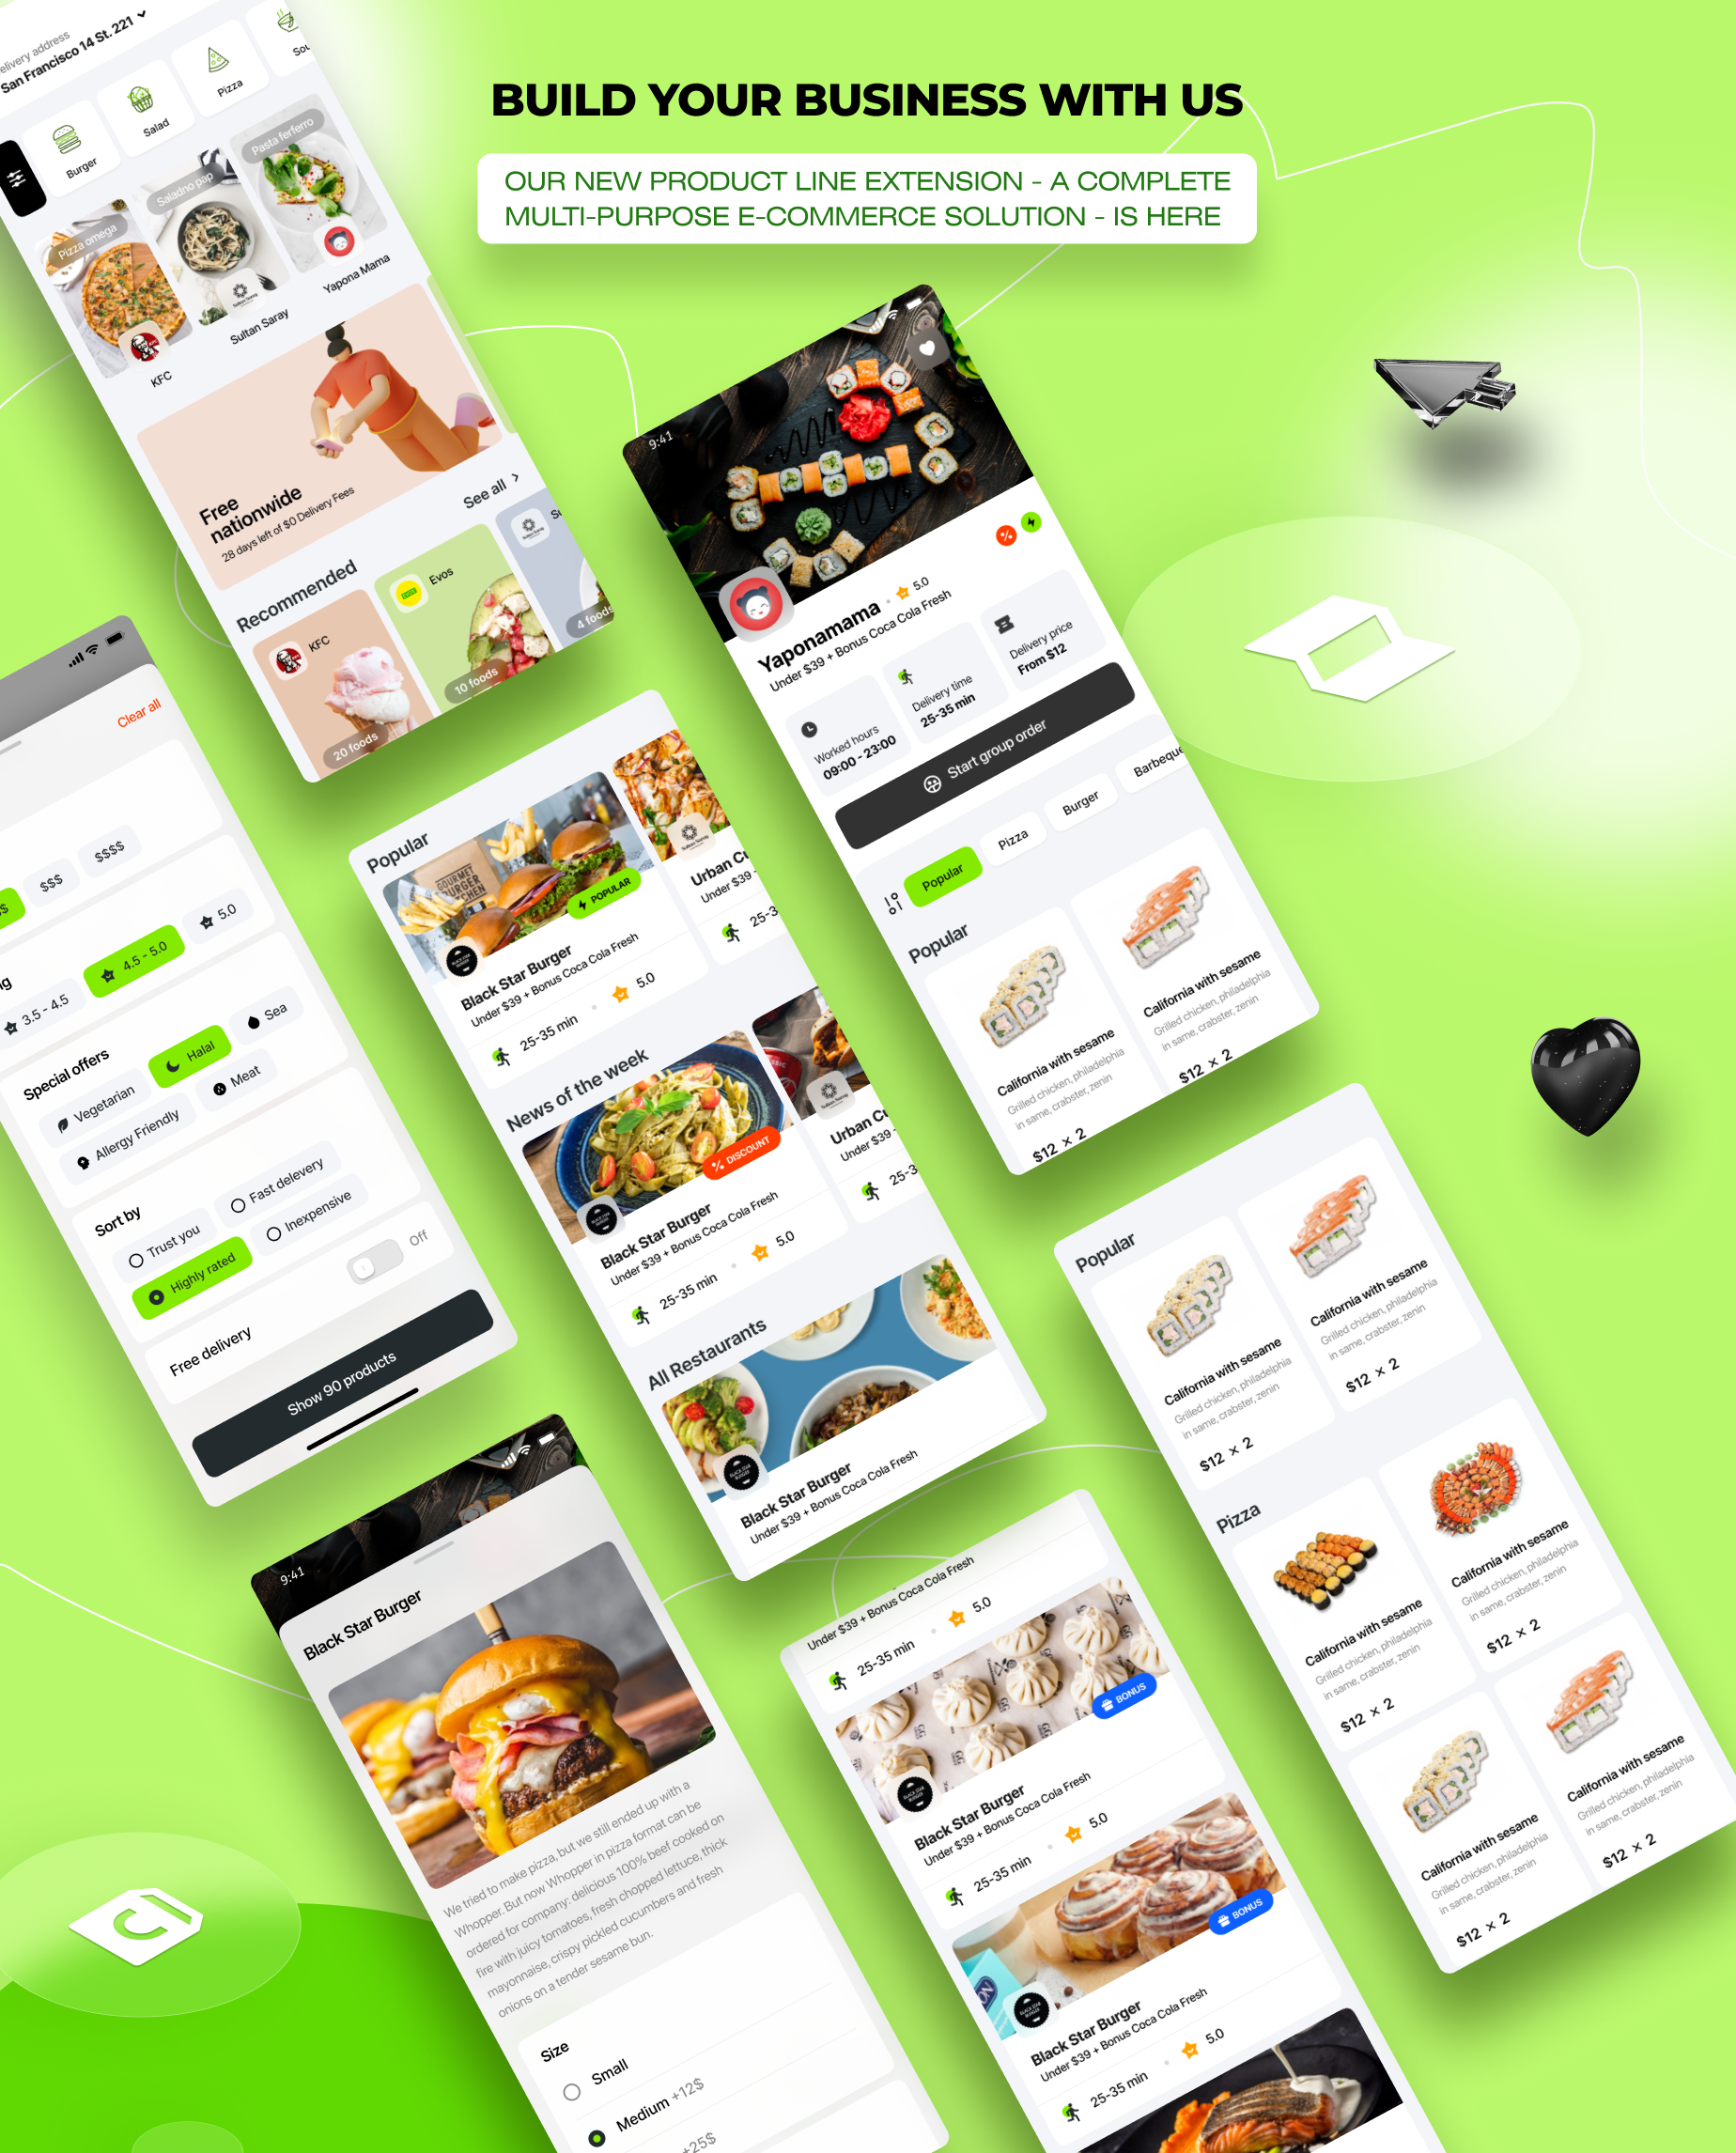 Foodyman - Marché de la commande et de la livraison d'aliments et d'épicerie (site Web et application client (iOS et Android)) - 10